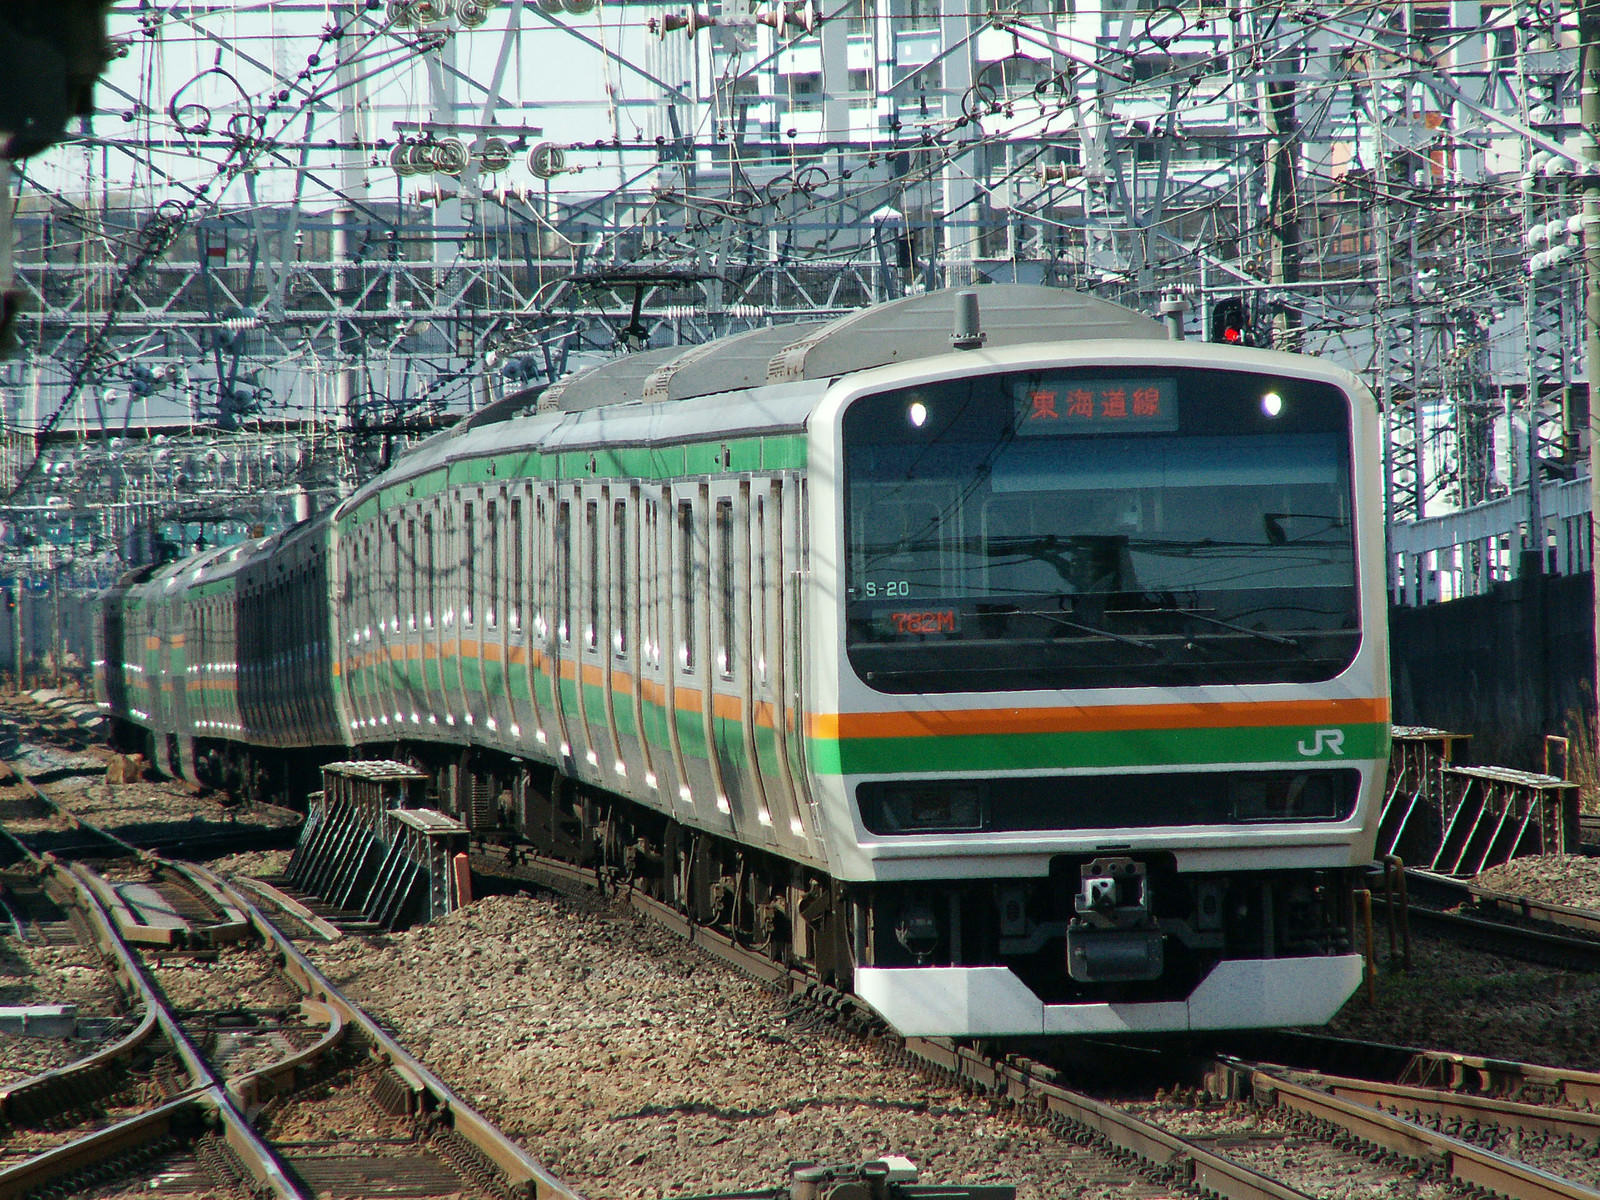 東海道線 E231系 の写真 画像 フリー素材 ぱくたそ